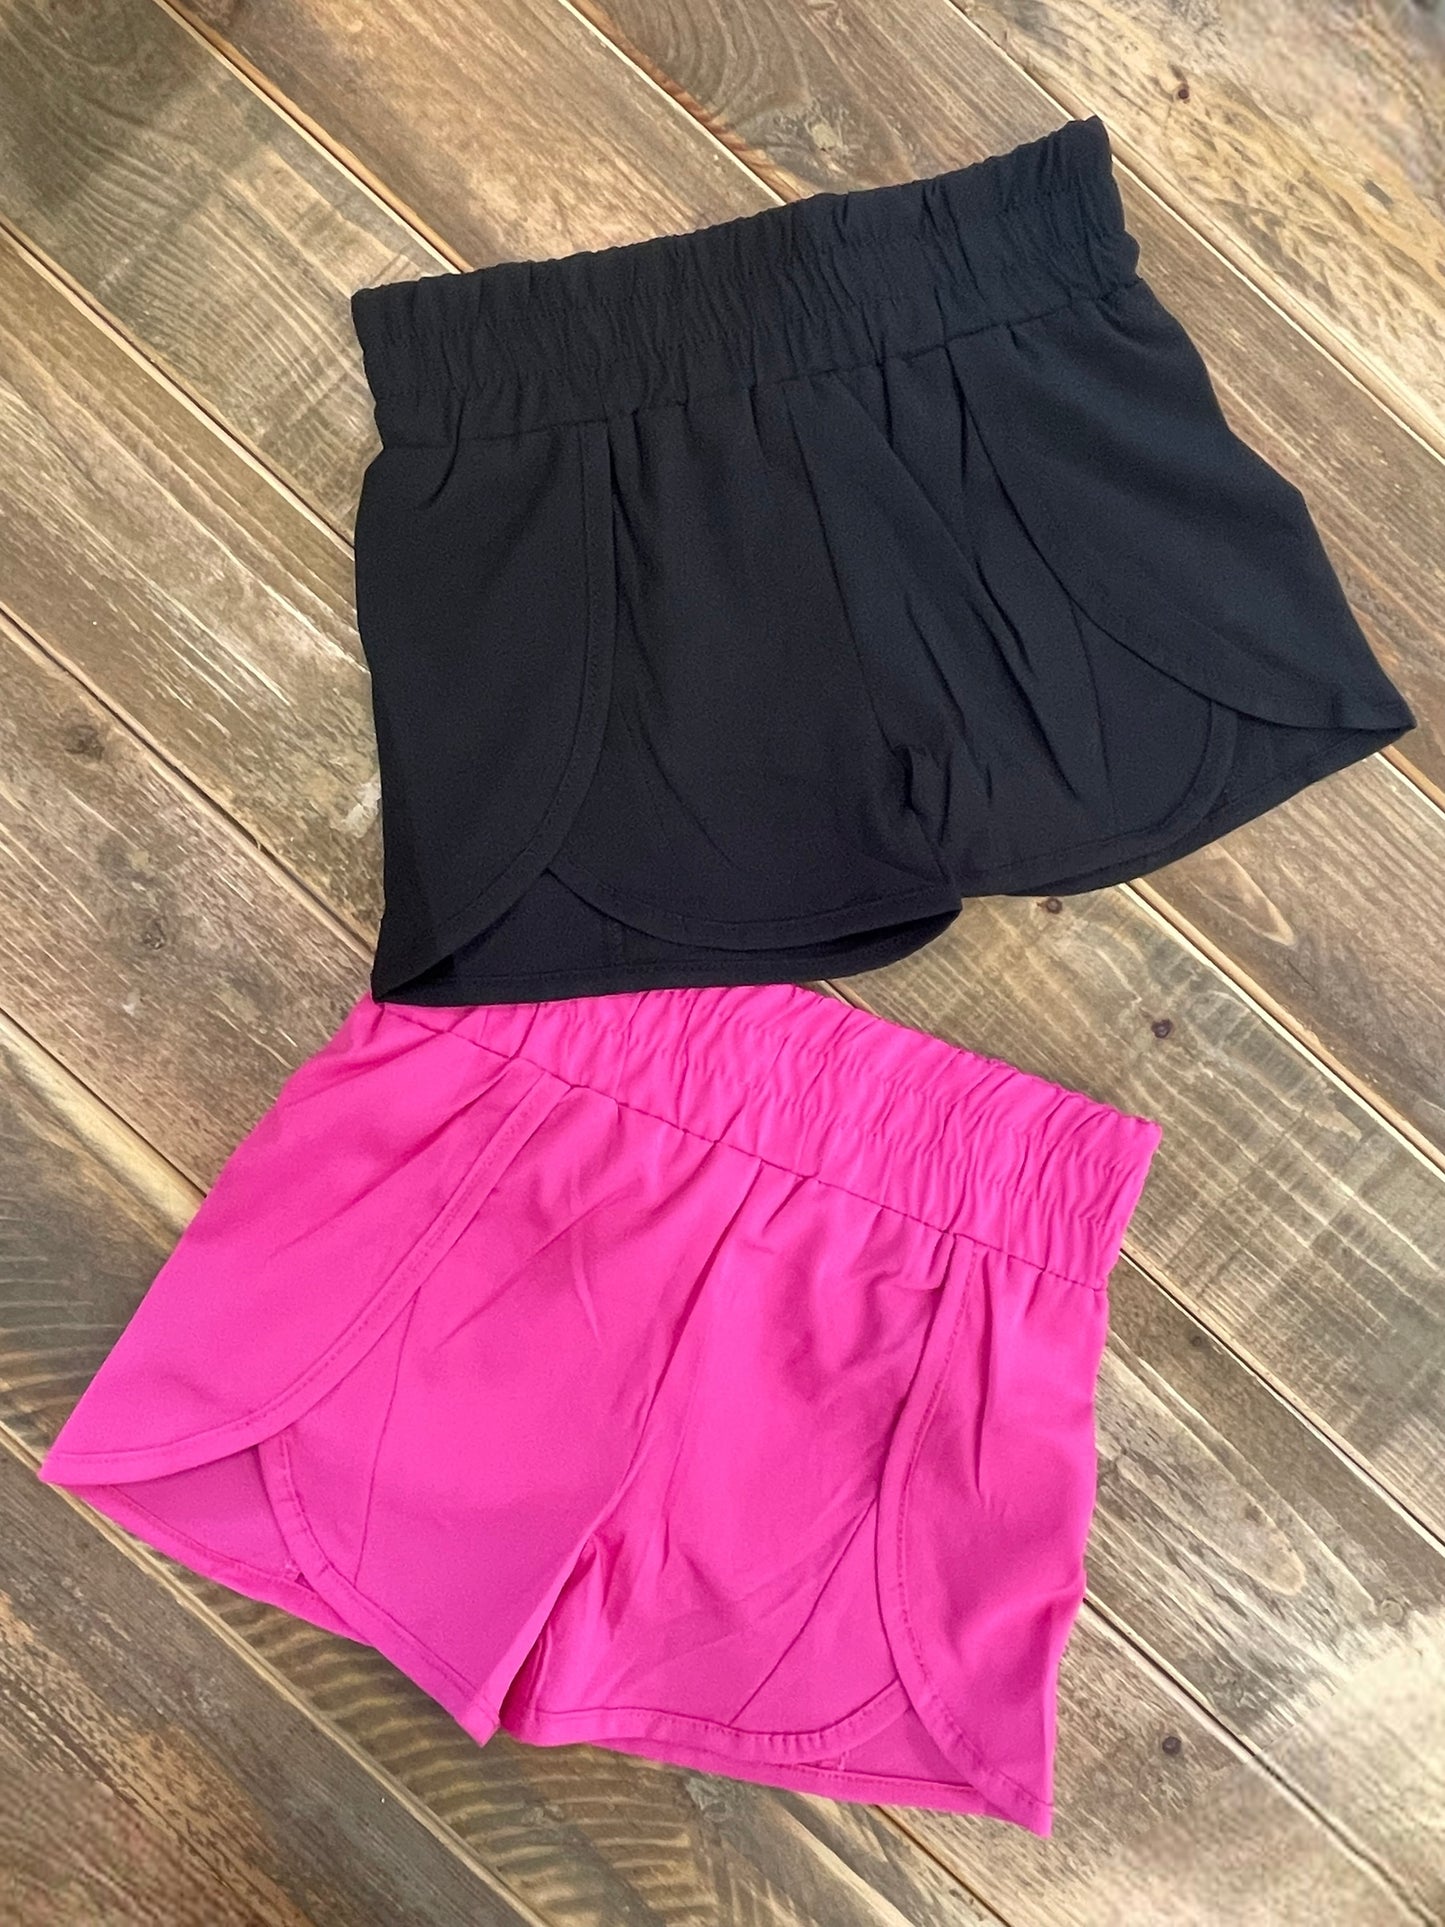 Windbreaker Shorts In Black